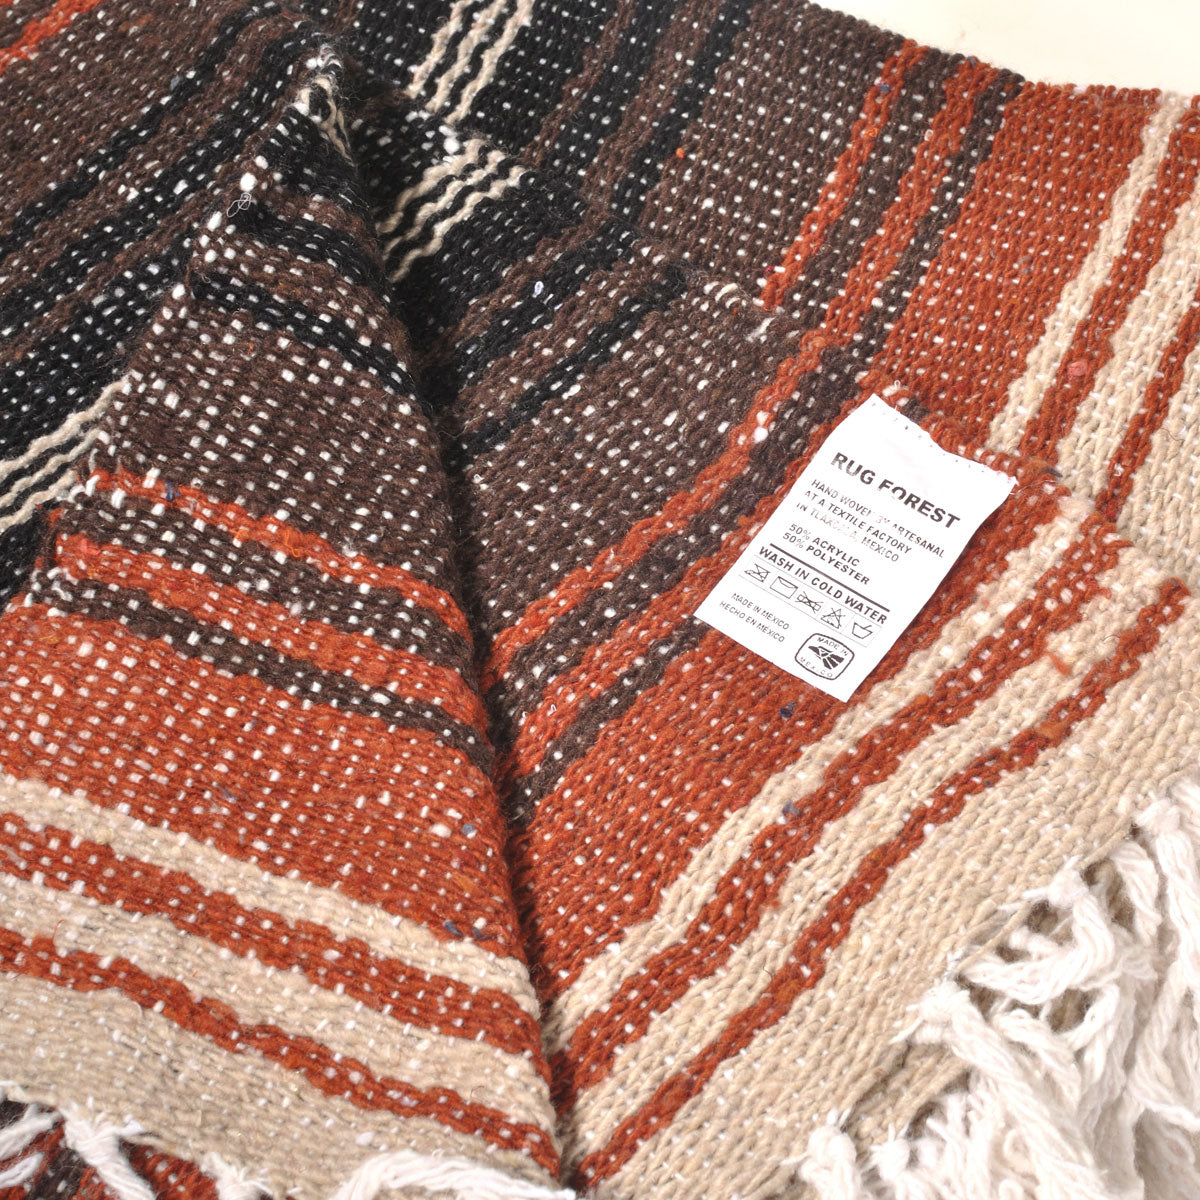 ラグフォレスト(Rug Forest)スタンダードファルサ メキシカンブランケット Standard Falsa Mexican Blanket[約185×135cm]TEAL/MINT